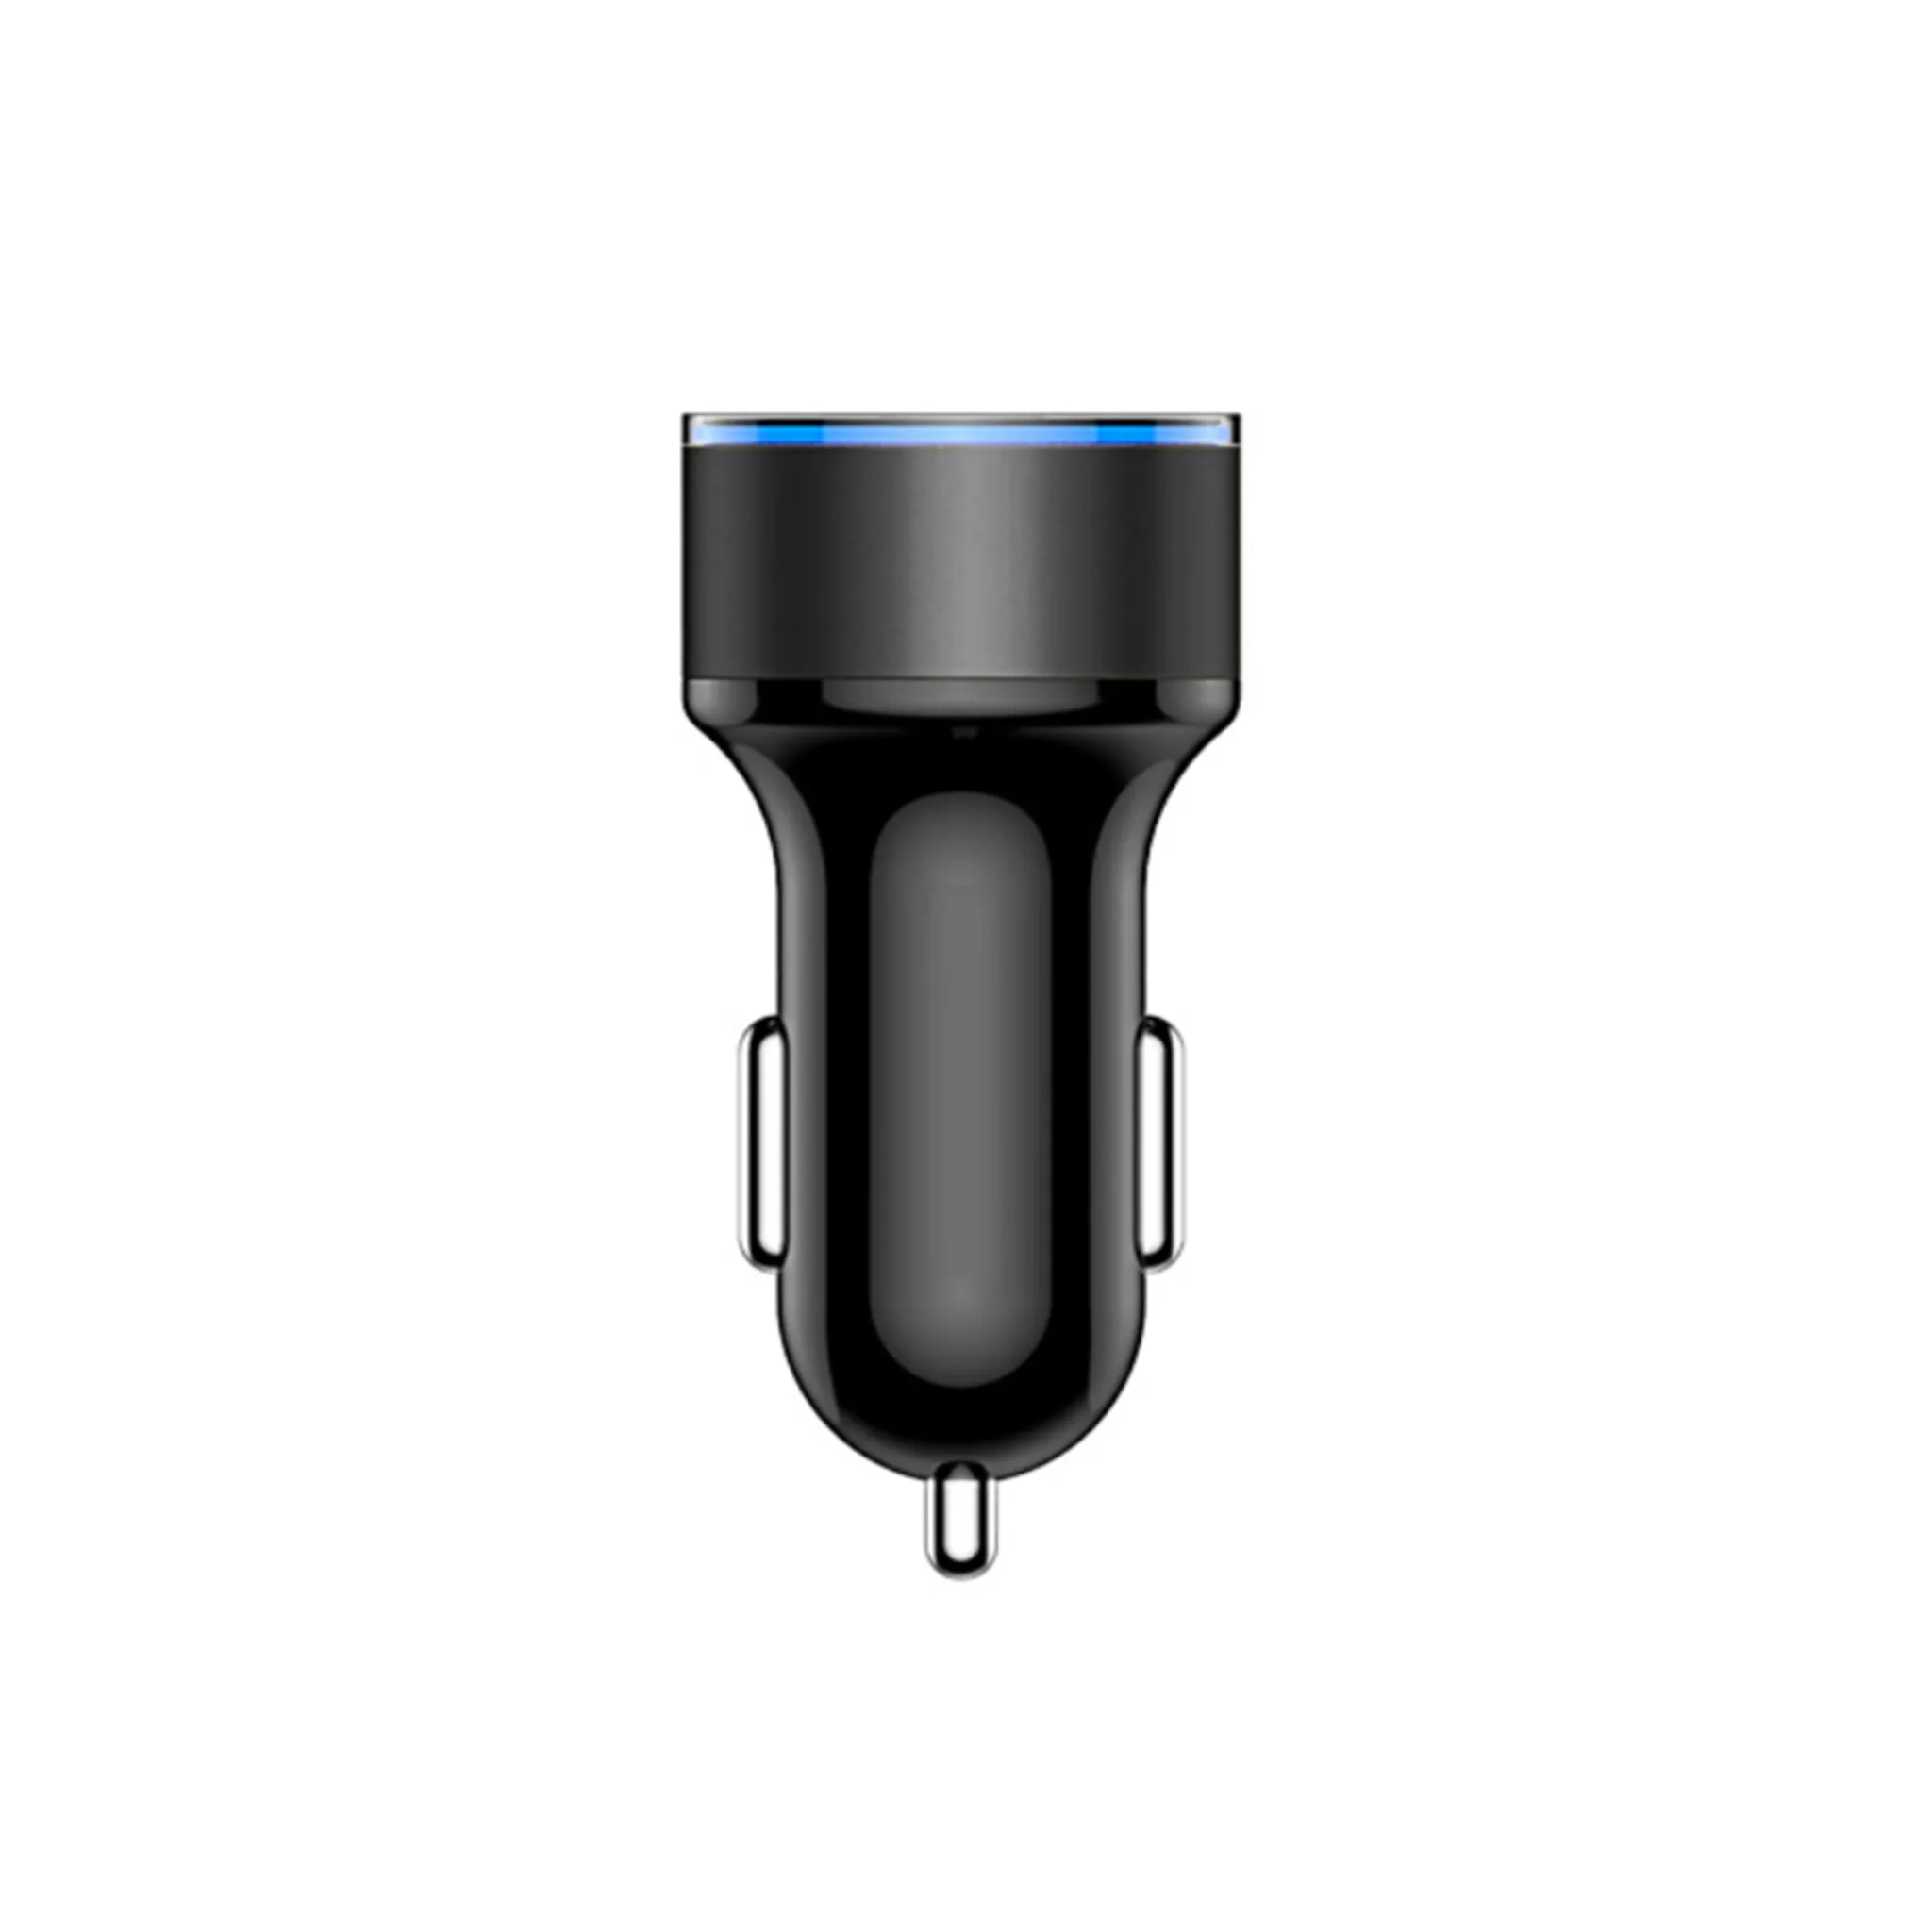 Motorrad Zigarettenanzünder Stecker Doppelt Port USB Ladegerät LED  Voltmeter W/